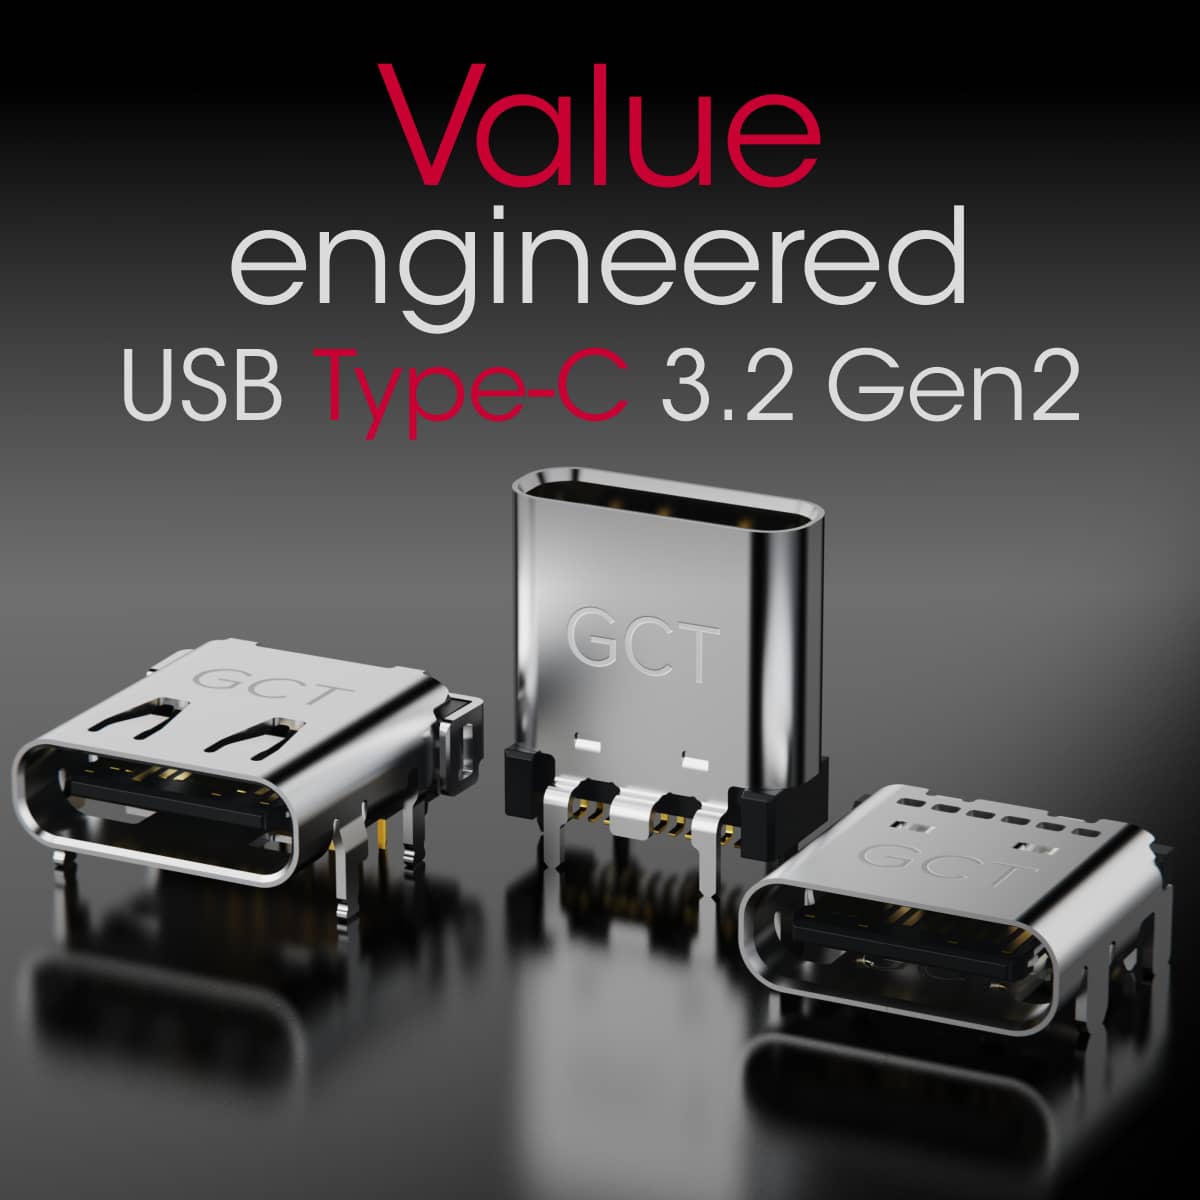 3.2 Gen2 USB Type-C Connectors